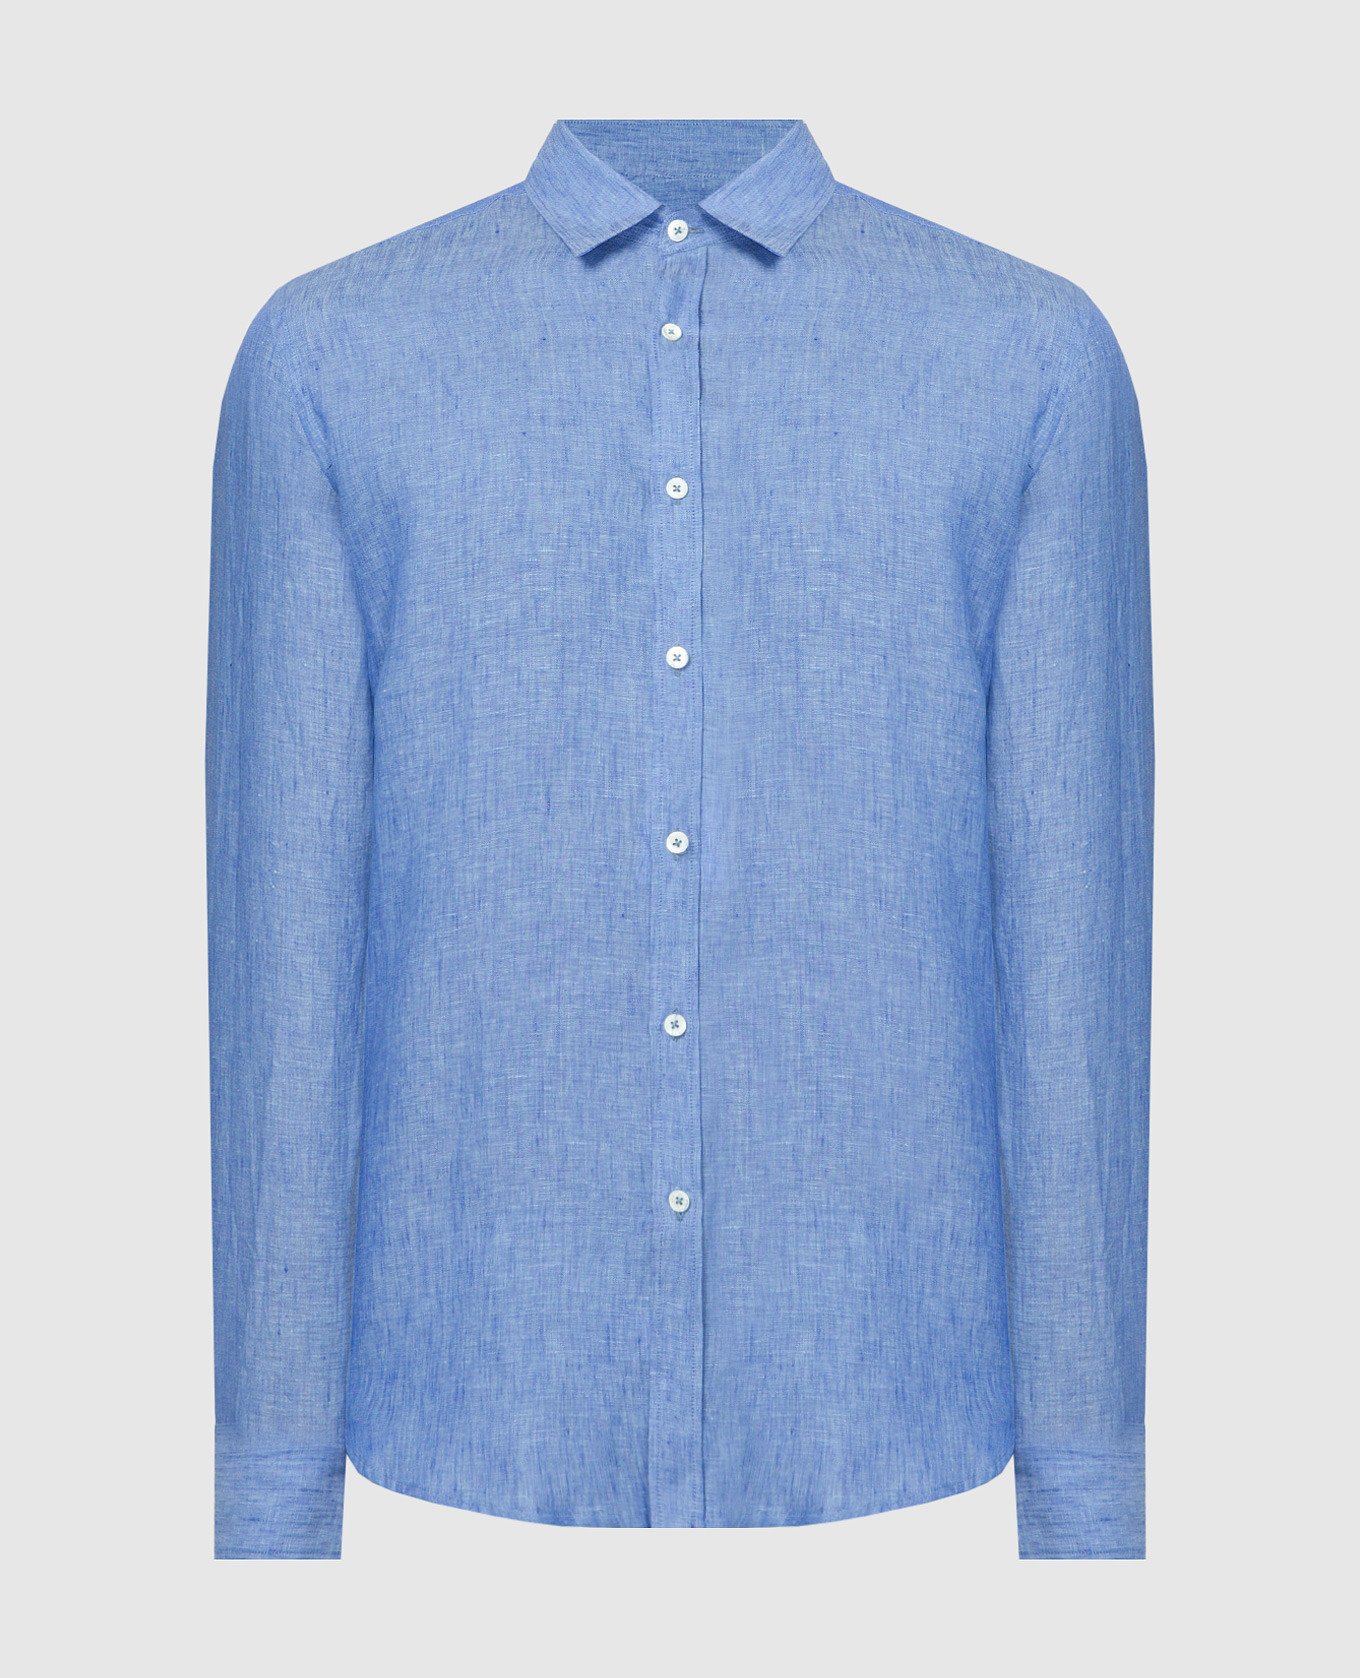 Blue straight cut shirt made of linen